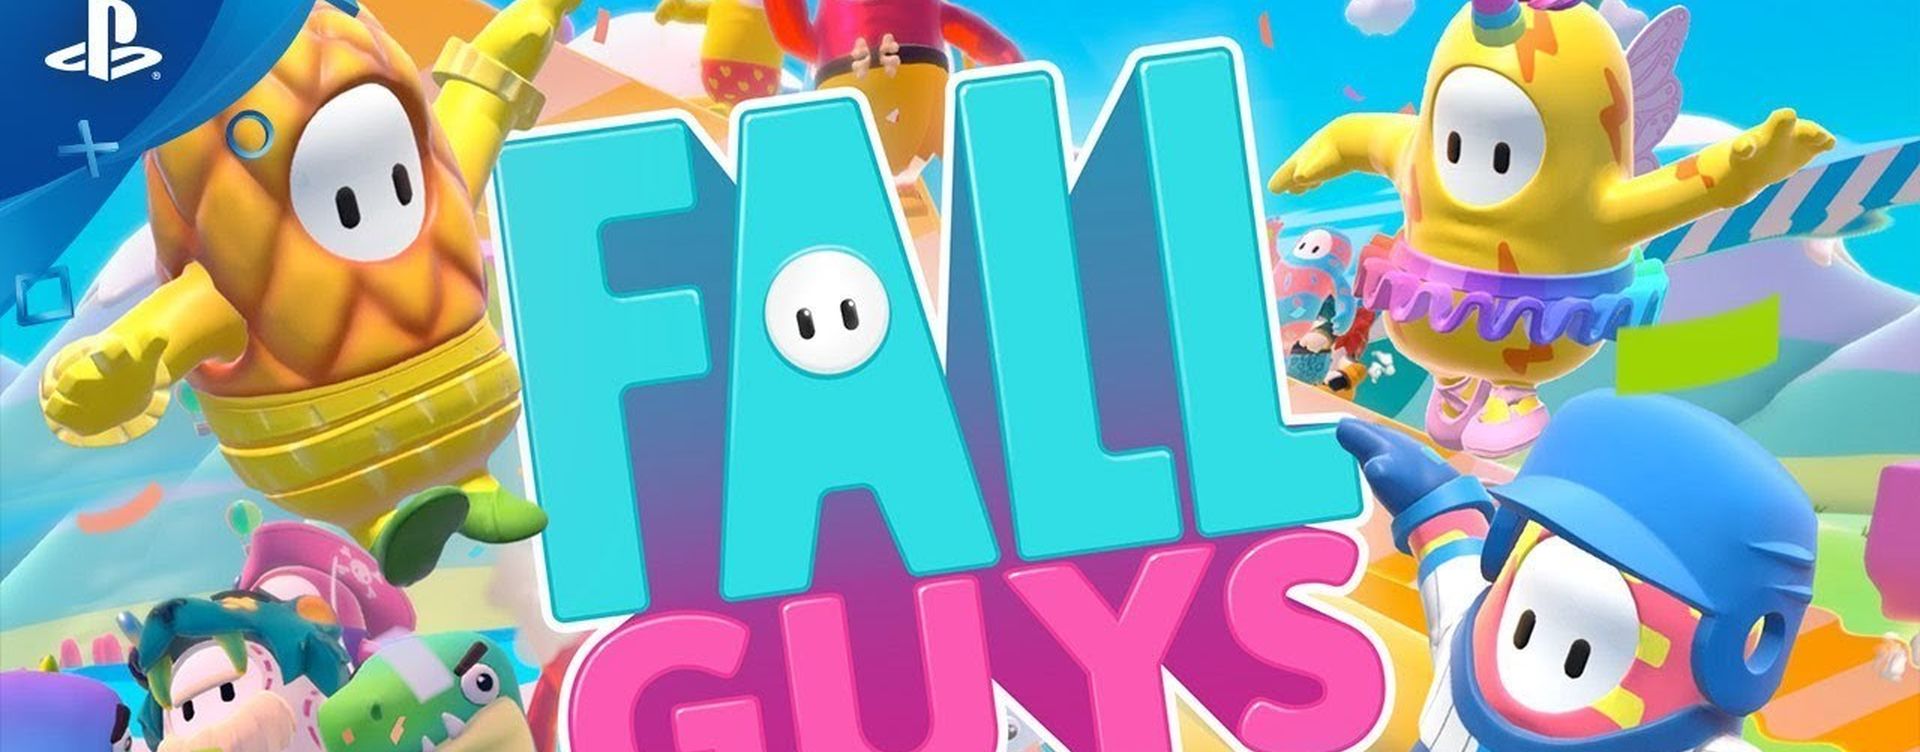 Fall Guys gratis en PS4: cómo jugarlo y hasta cuándo está - Movistar eSports